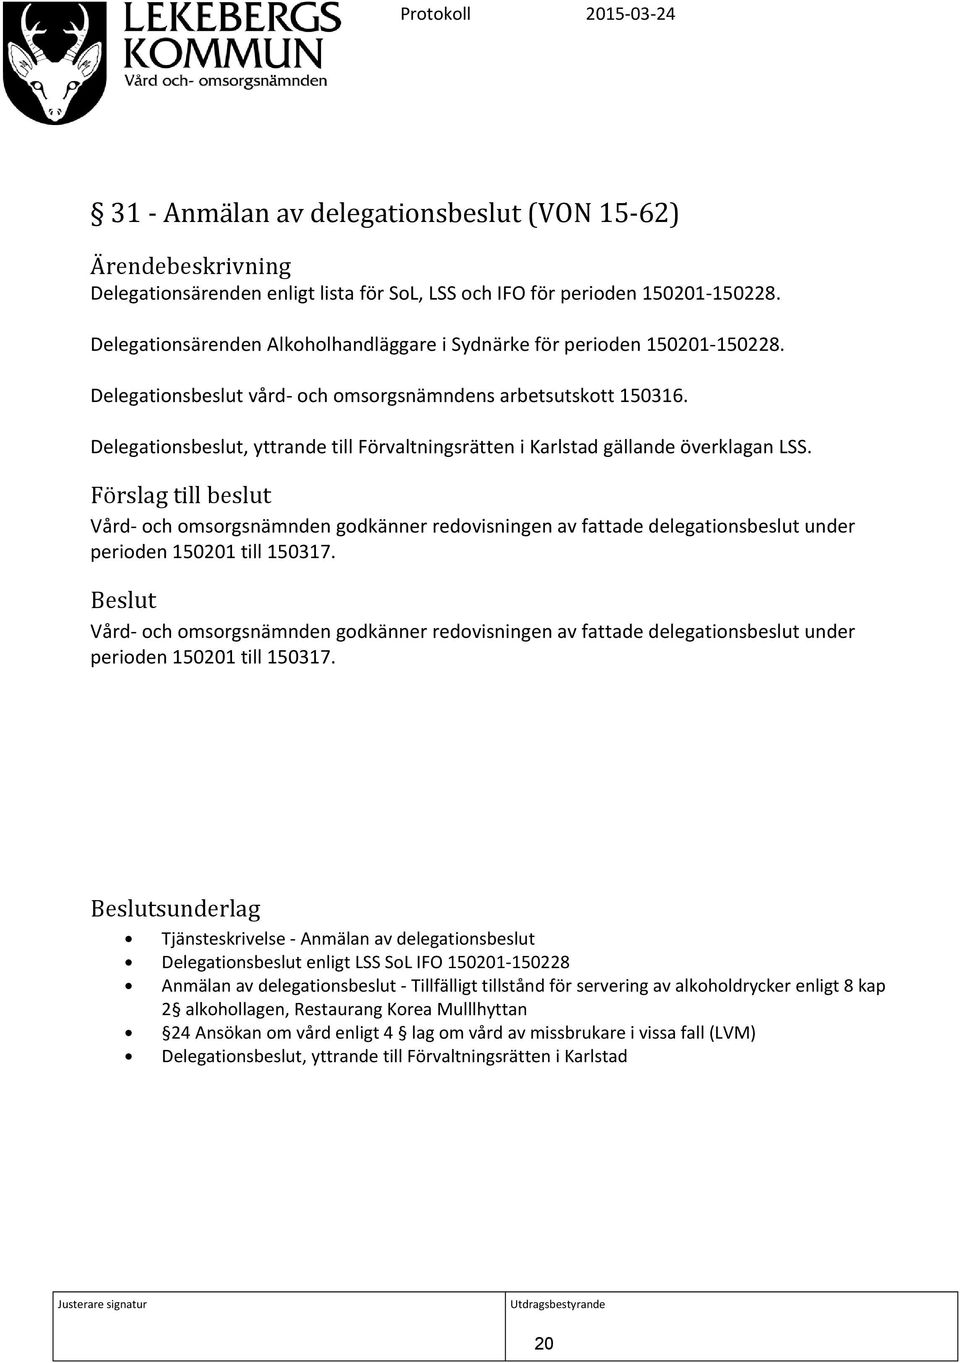 Delegationsbeslut, yttrande till Förvaltningsrätten i Karlstad gällande överklagan LSS.